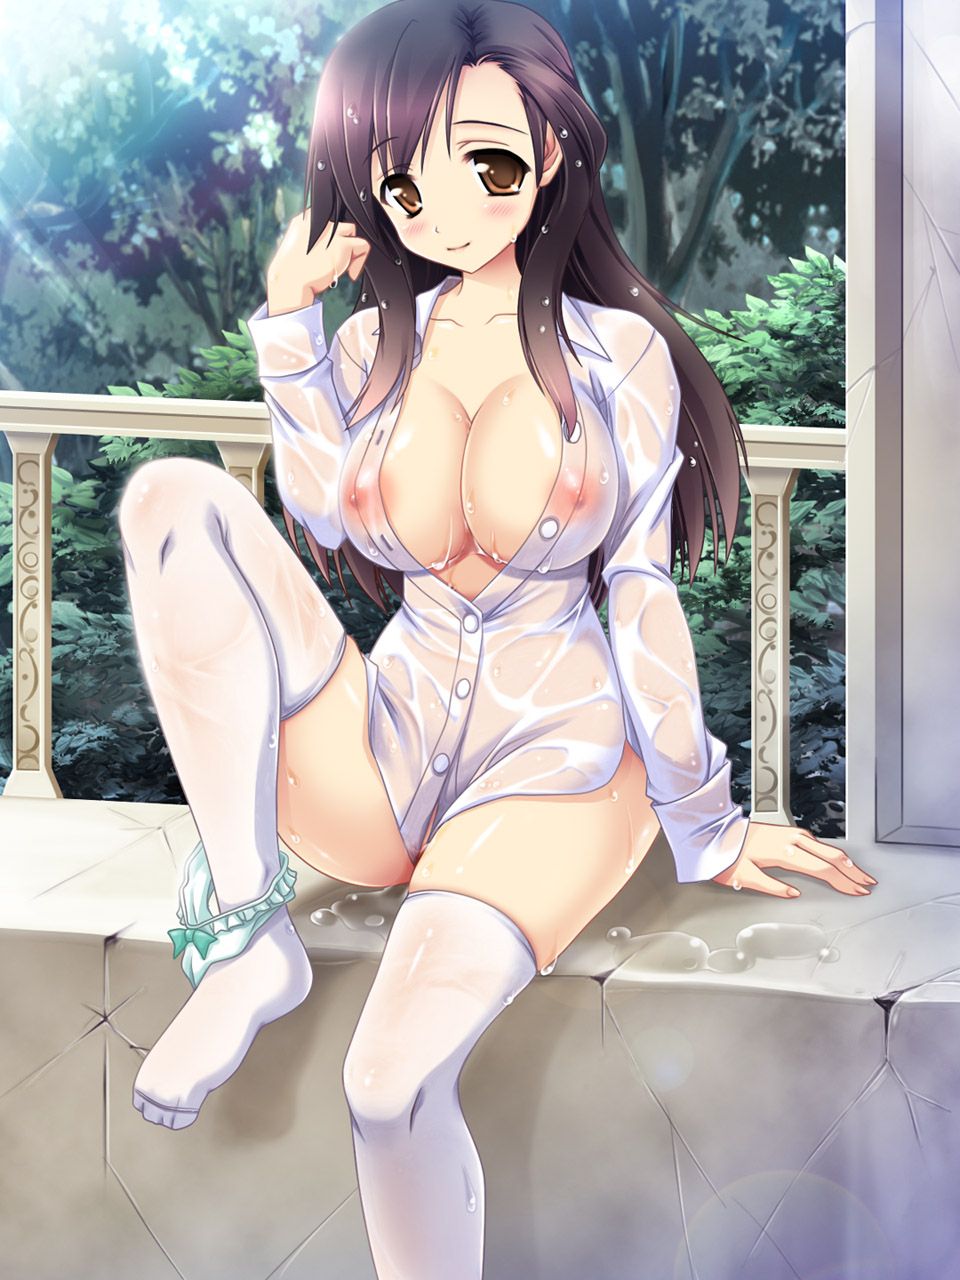 Erotic anime summary Nipple erection rolled up perverted beautiful girls [secondary erotic] 16